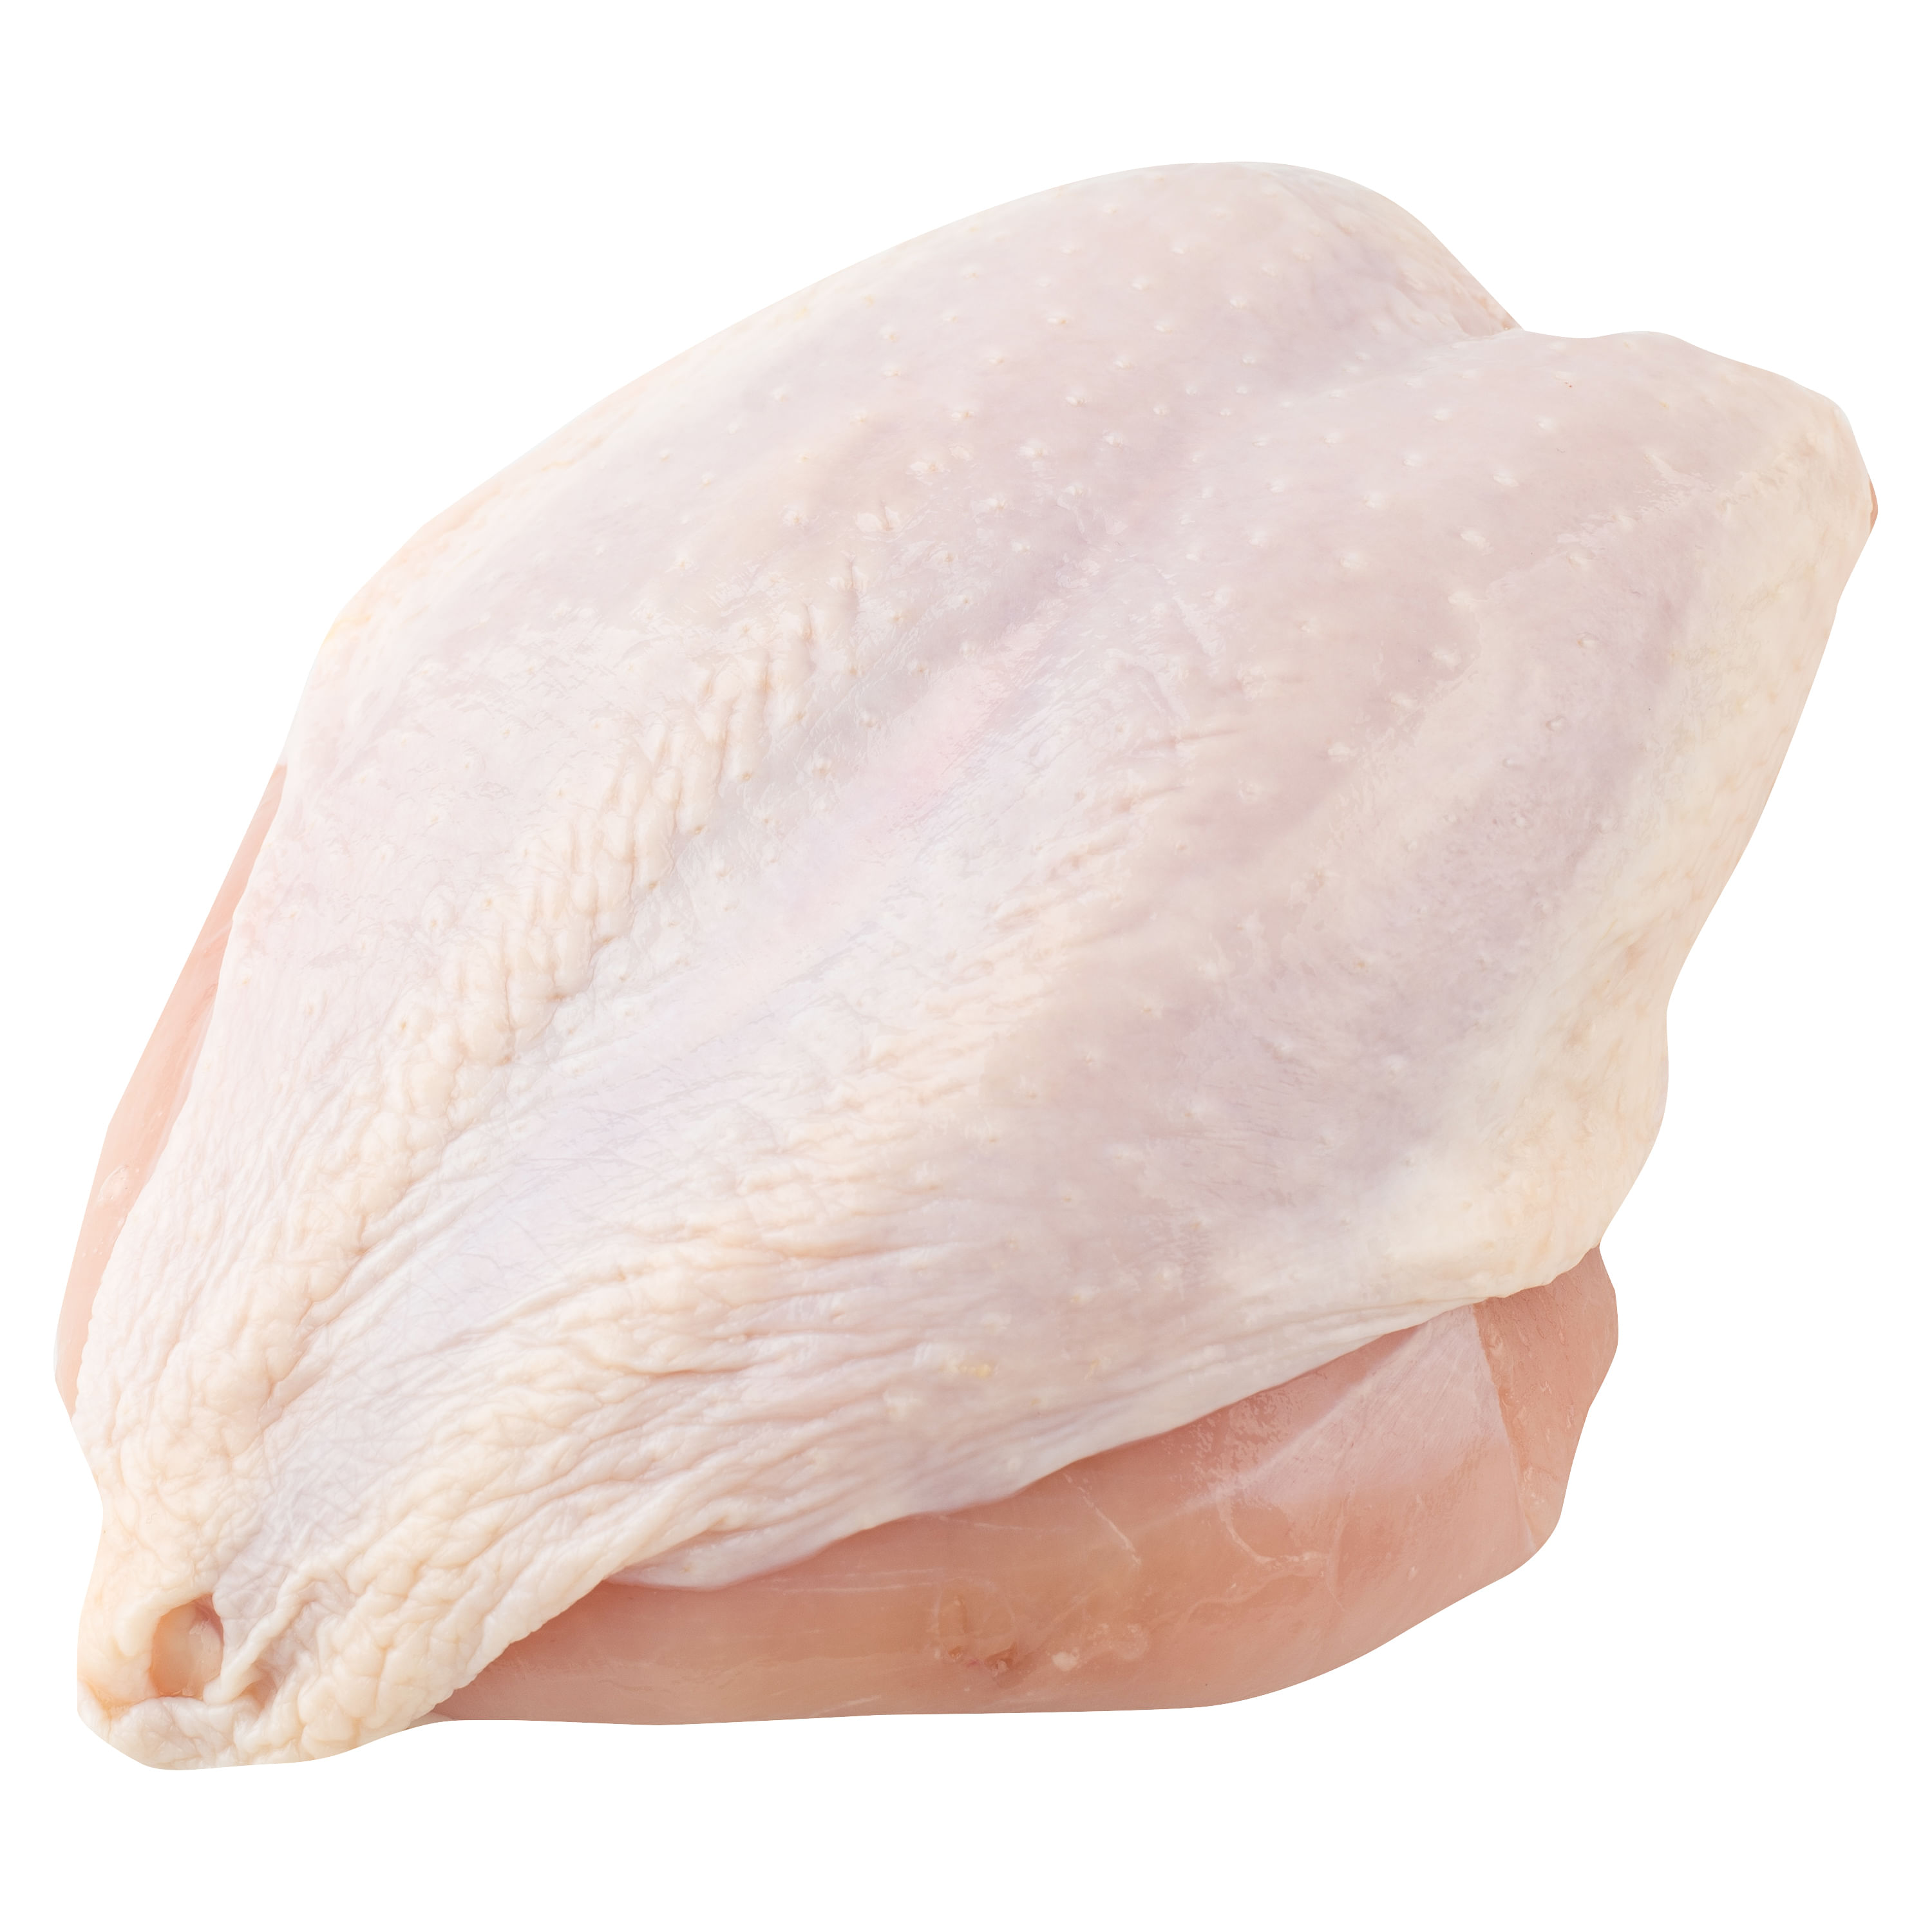 Pechuga de pollo fresca - 1 kg - Limpia y desgrasada